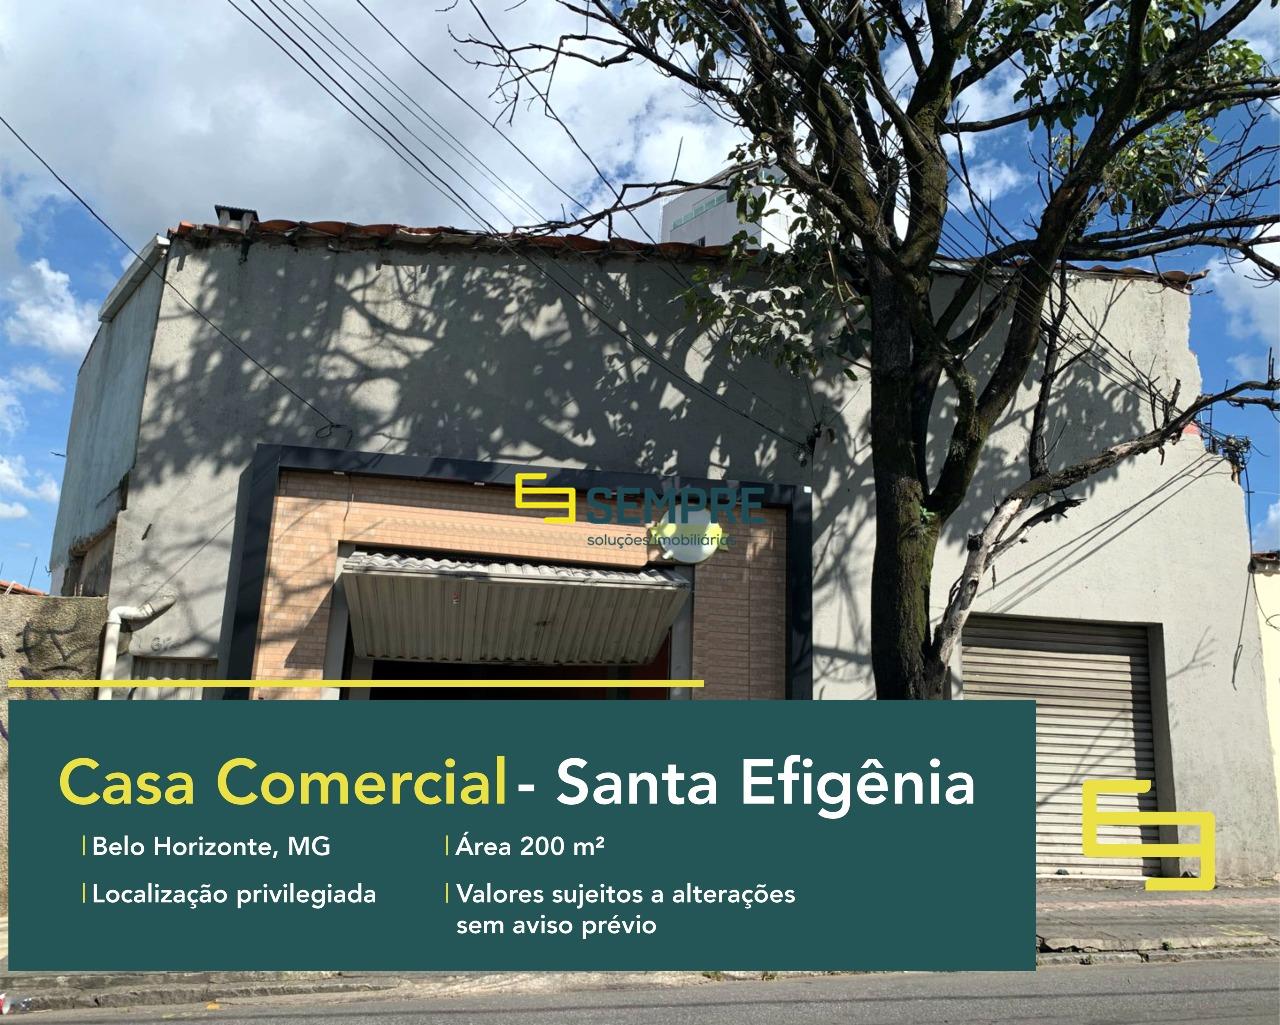 Aluguel de casa comercial no bairro Santa Efigênia em BH, excelente localização. O estabelecimento comercial conta com área de 200 m².